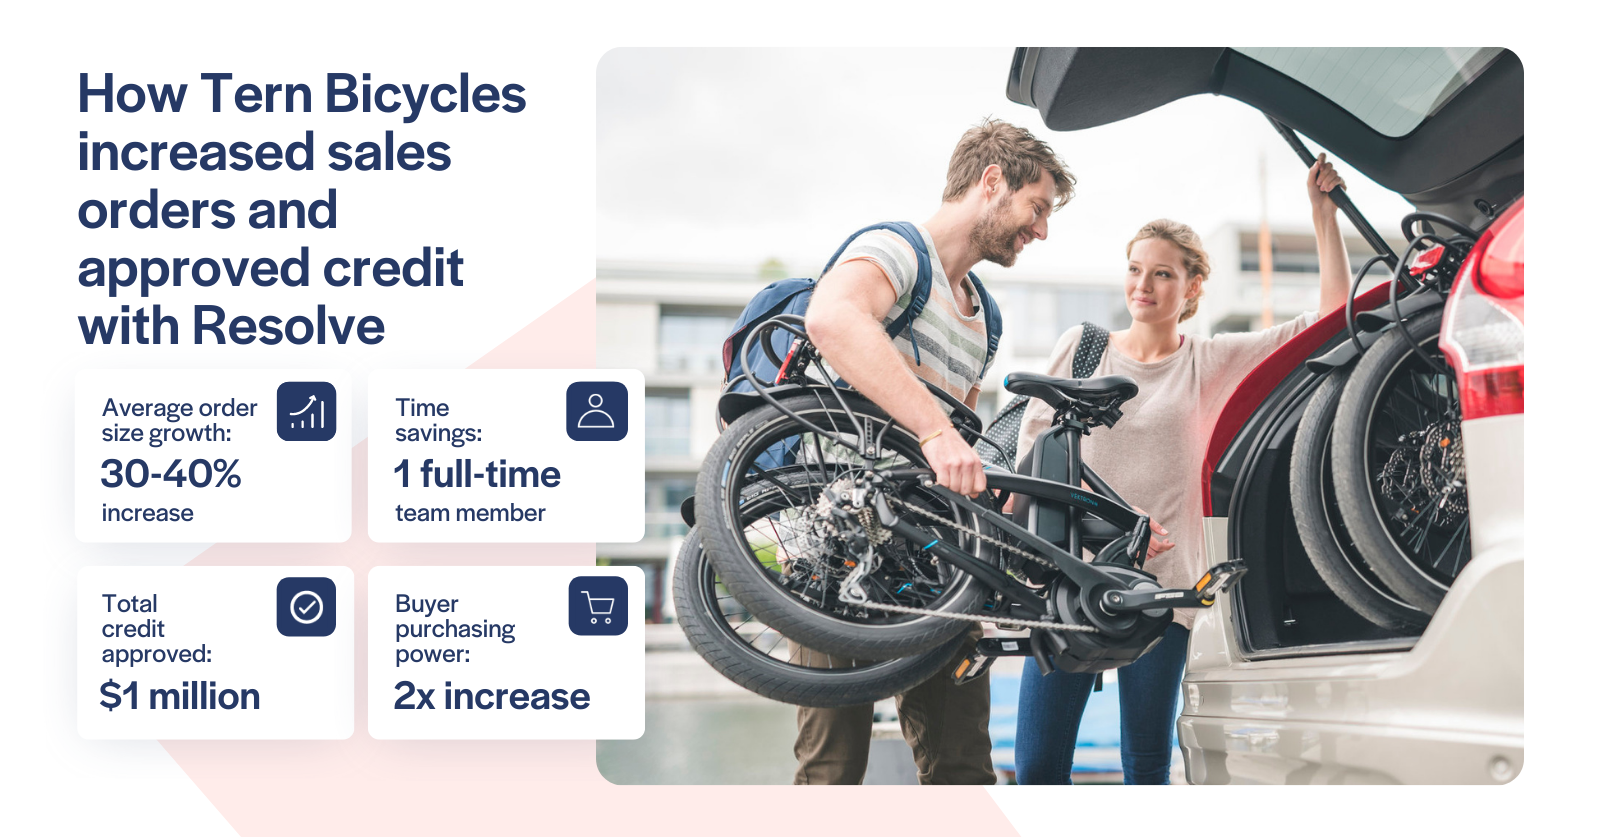 tern bicycles increased sales orders